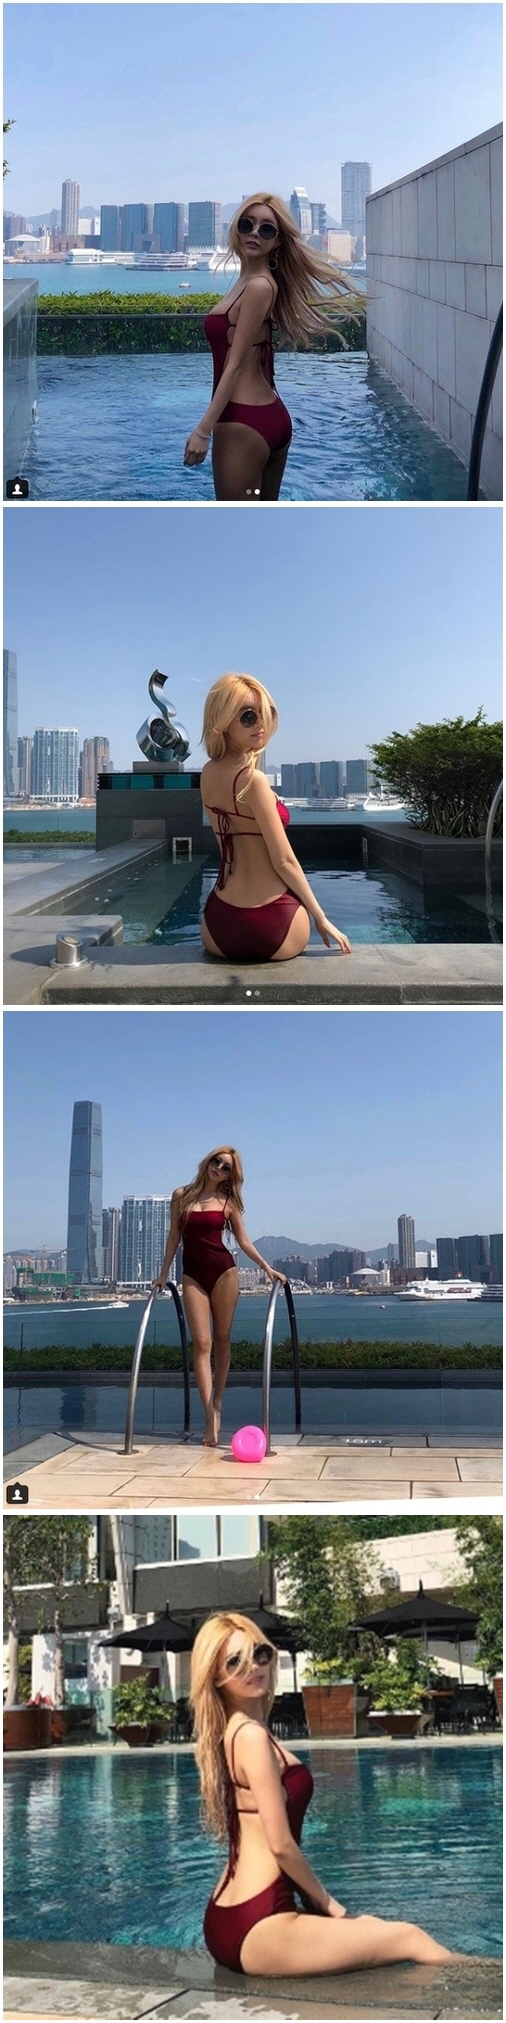 티아라 큐리 홍콩 호텔서 관능적 수영복 자태 공개 화제 “장천이 반할 만 하네”